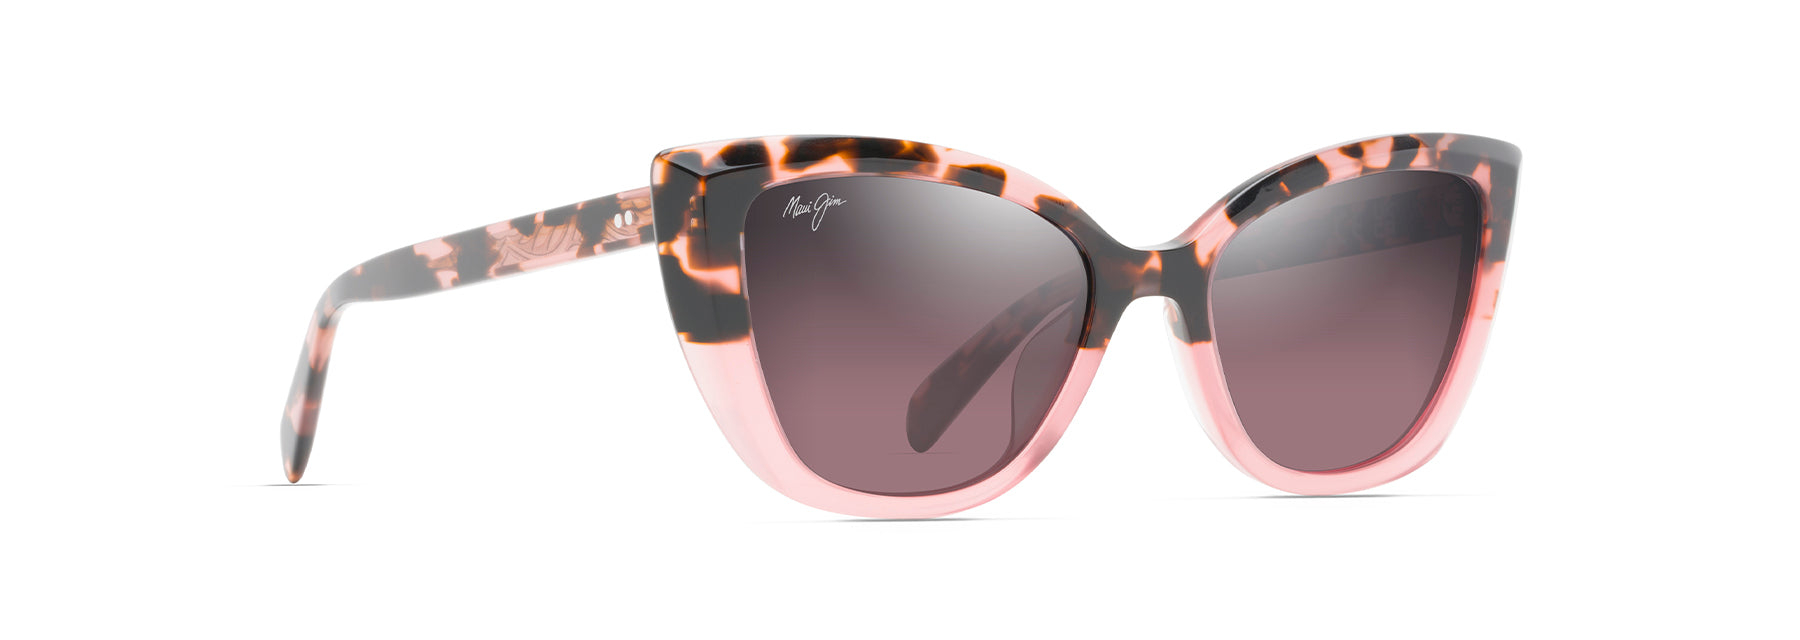 Maui Jim Blossom Sunglasses